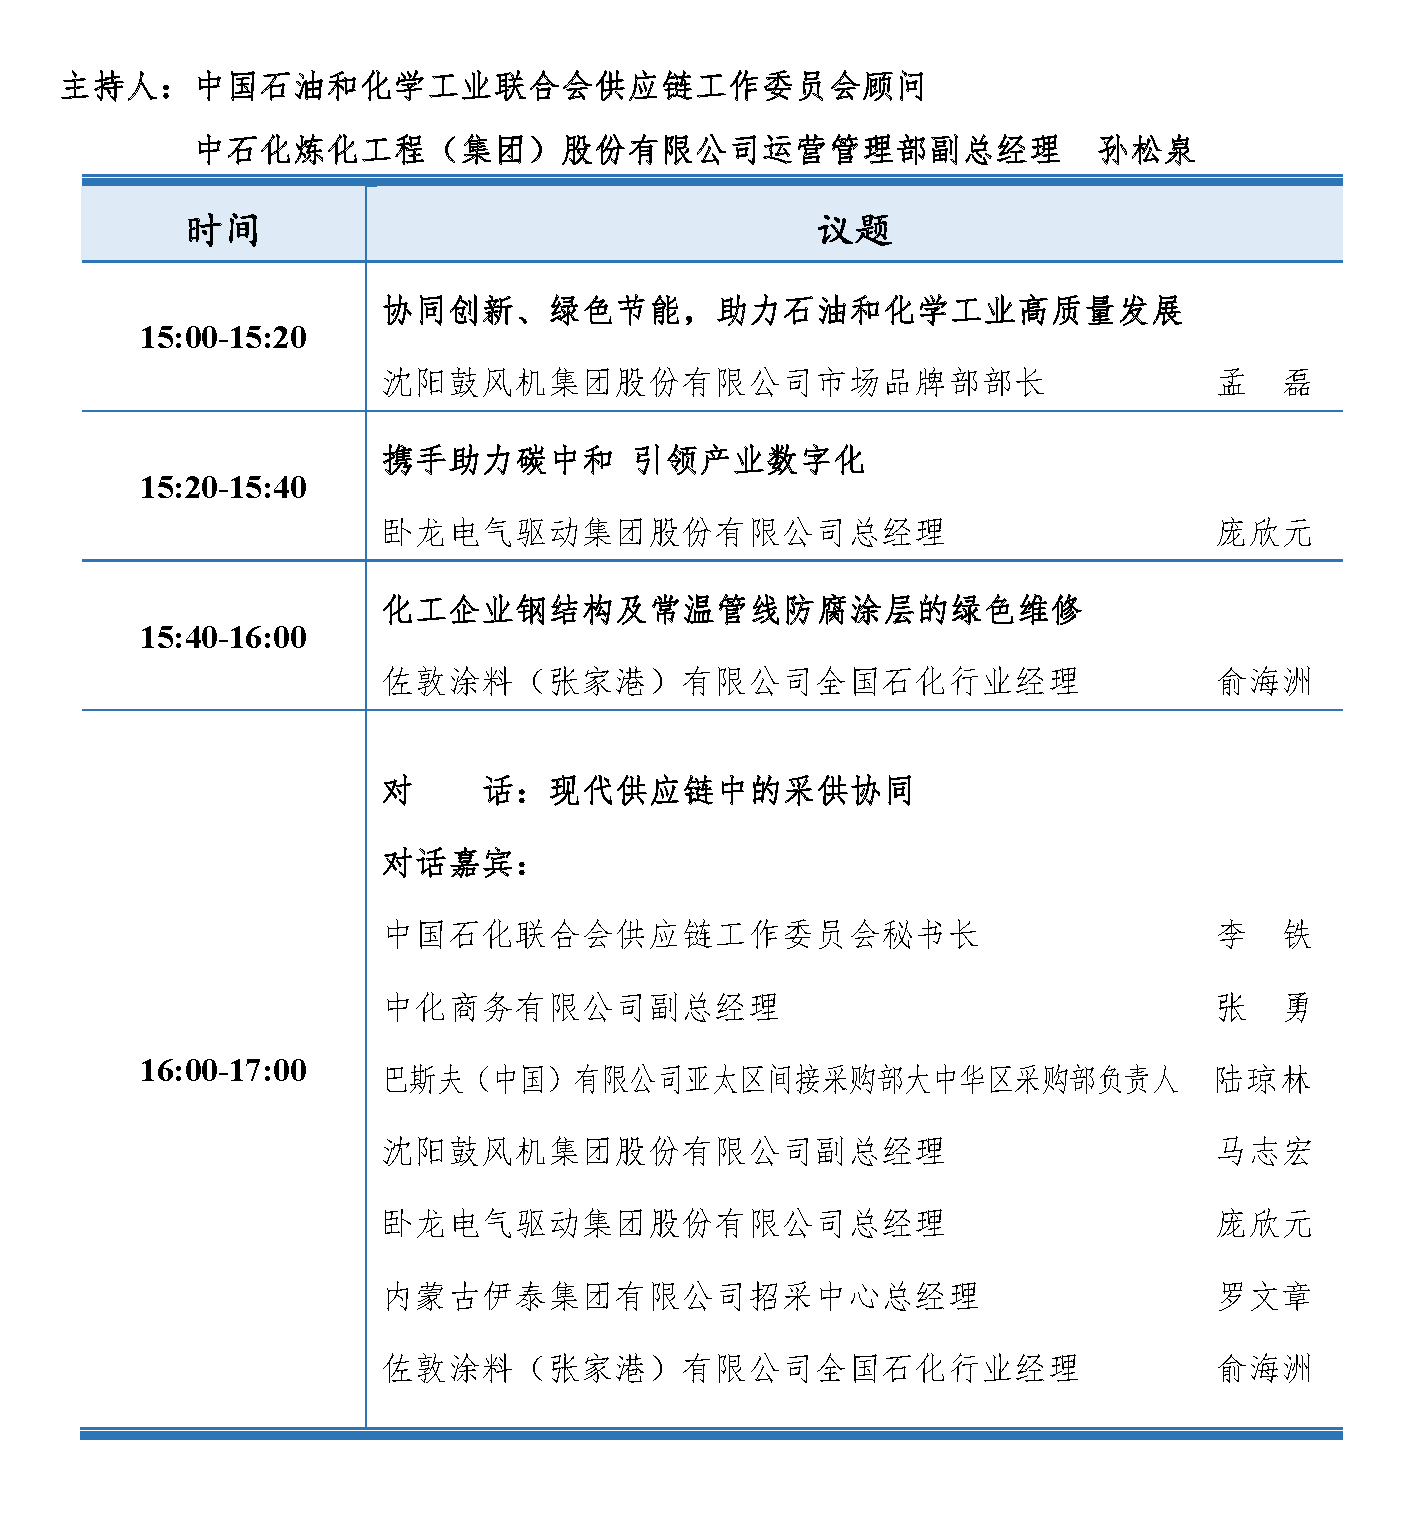 会议手册-2021中国石化行业采购大会_页面_14.png